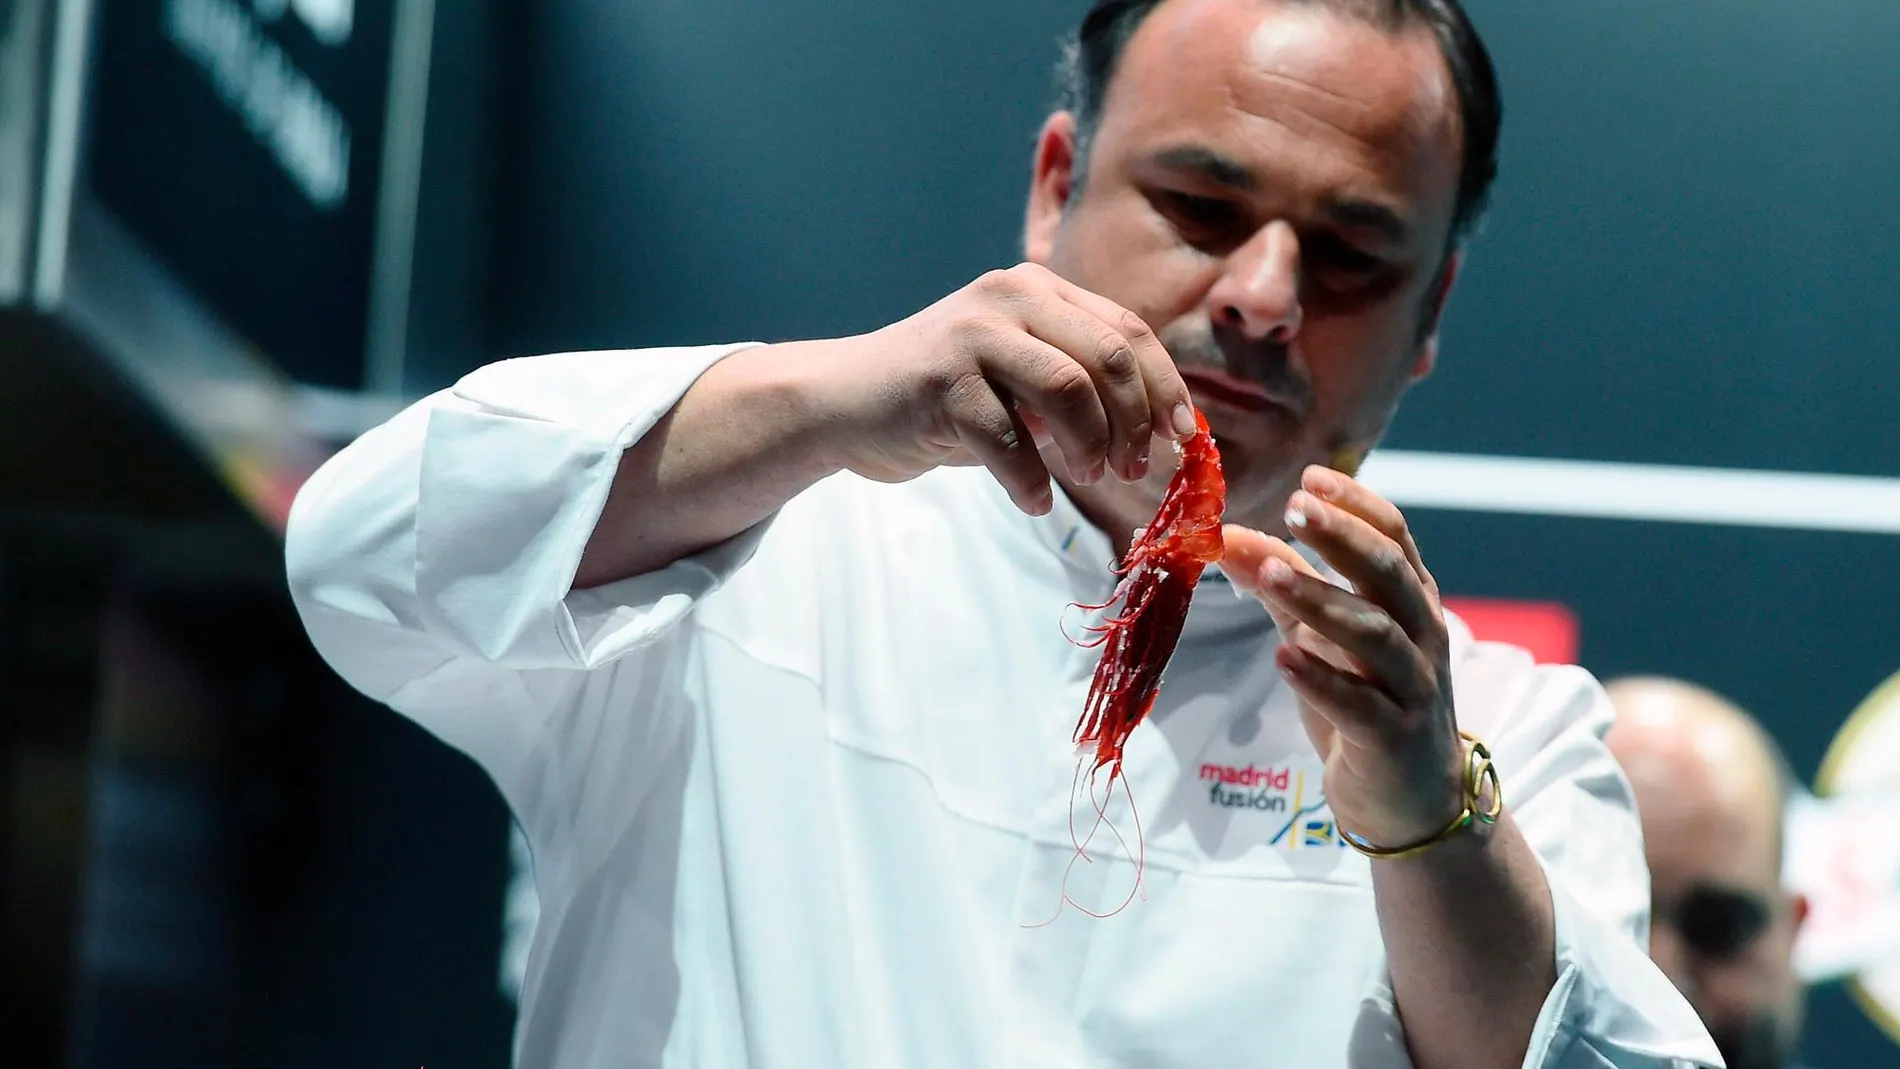 El cocinero Ángel León mostrando su nueva técnica de cocción a través de la sal/EFE